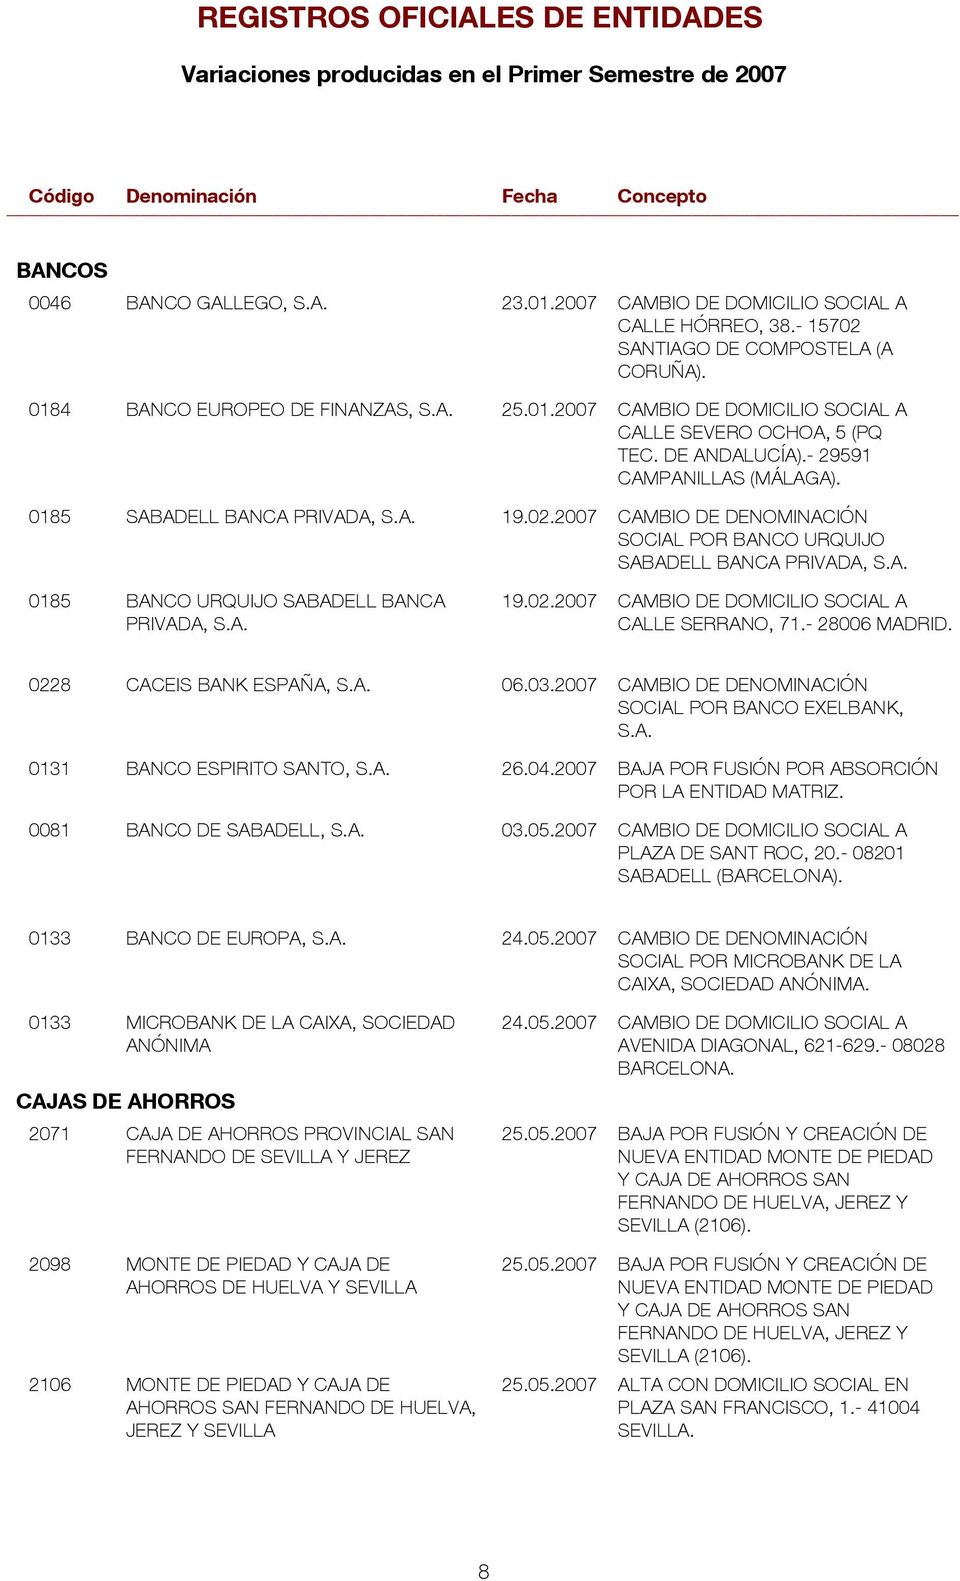 DE ANDALUCÍA).- 29591 CAMPANILLAS (MÁLAGA). 015 SABADELL BANCA PRIVADA, S.A. 19.02.2007 CAMBIO DE DENOMINACIÓN SOCIAL POR BANCO URQUIJO SABADELL BANCA PRIVADA, S.A. 015 BANCO URQUIJO SABADELL BANCA 19.